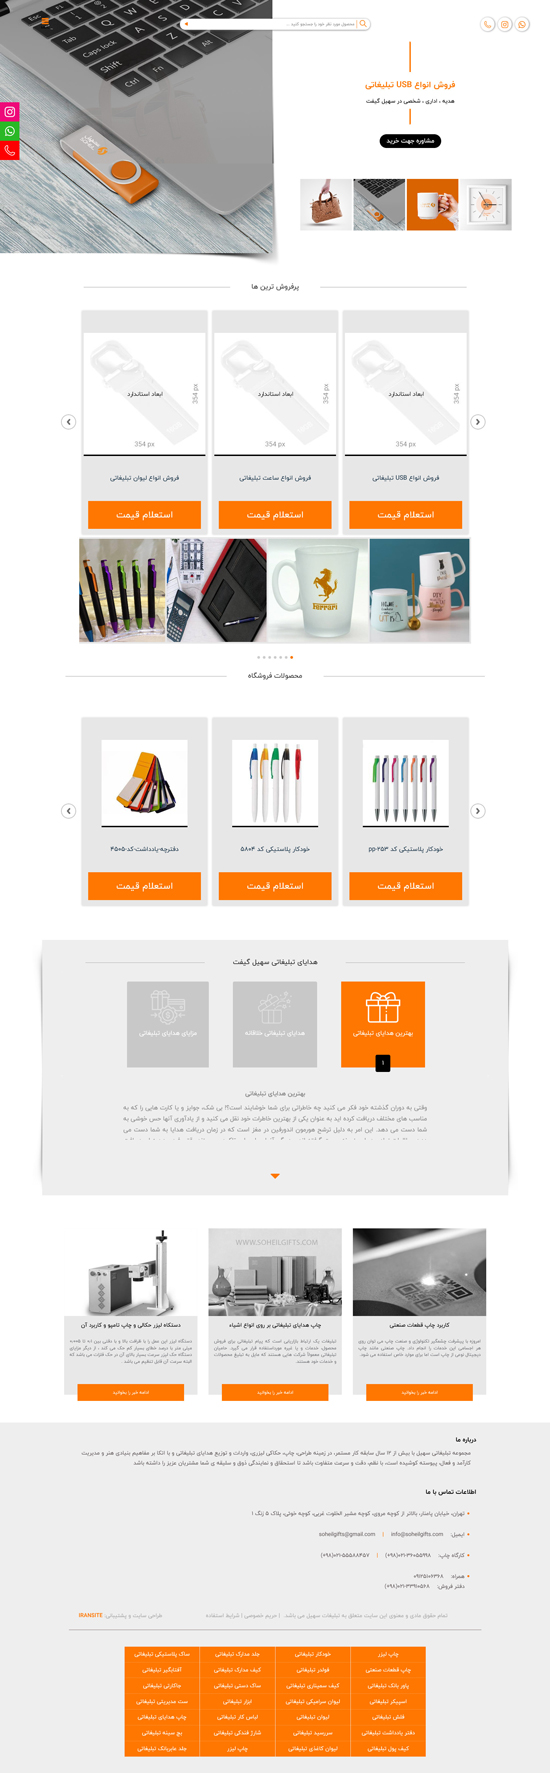 طراحی وب سایت هدایای تبلیغاتی سهیل